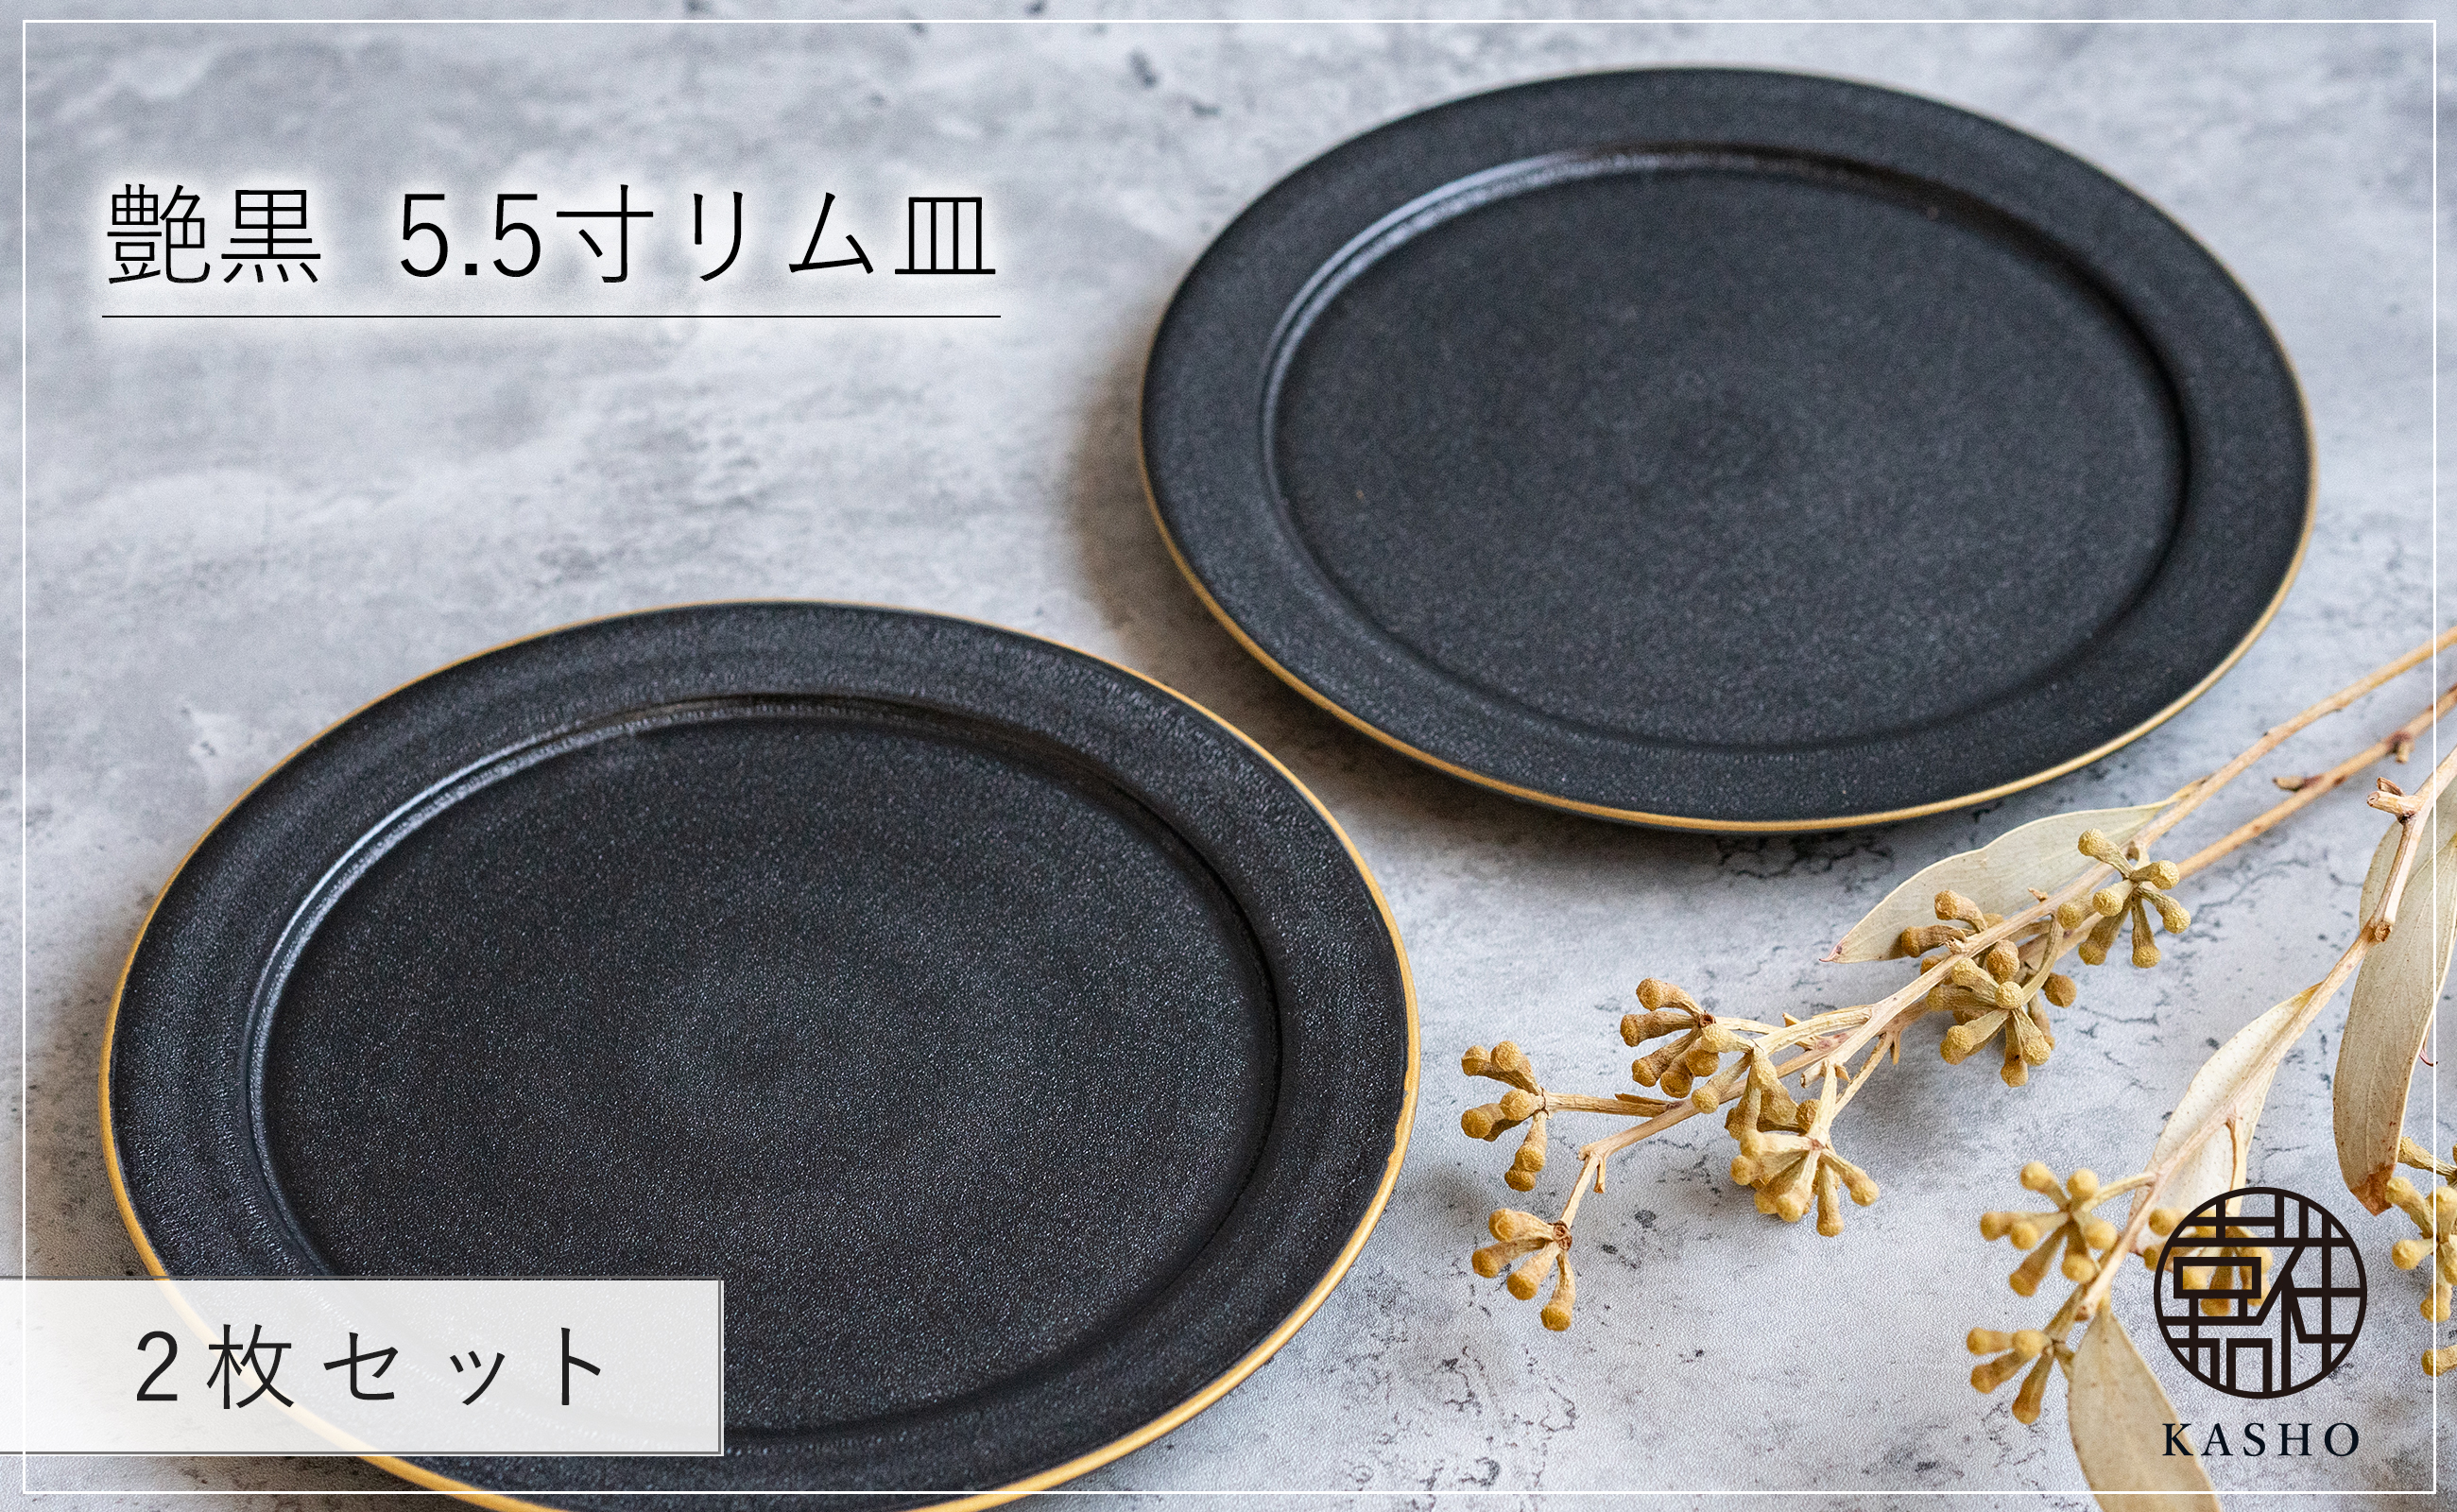 〈平戸嘉祥窯〉艶黒 5.5寸リム皿 (取り皿) 2枚セット 取り皿 ケーキ皿 パン皿 食器 皿